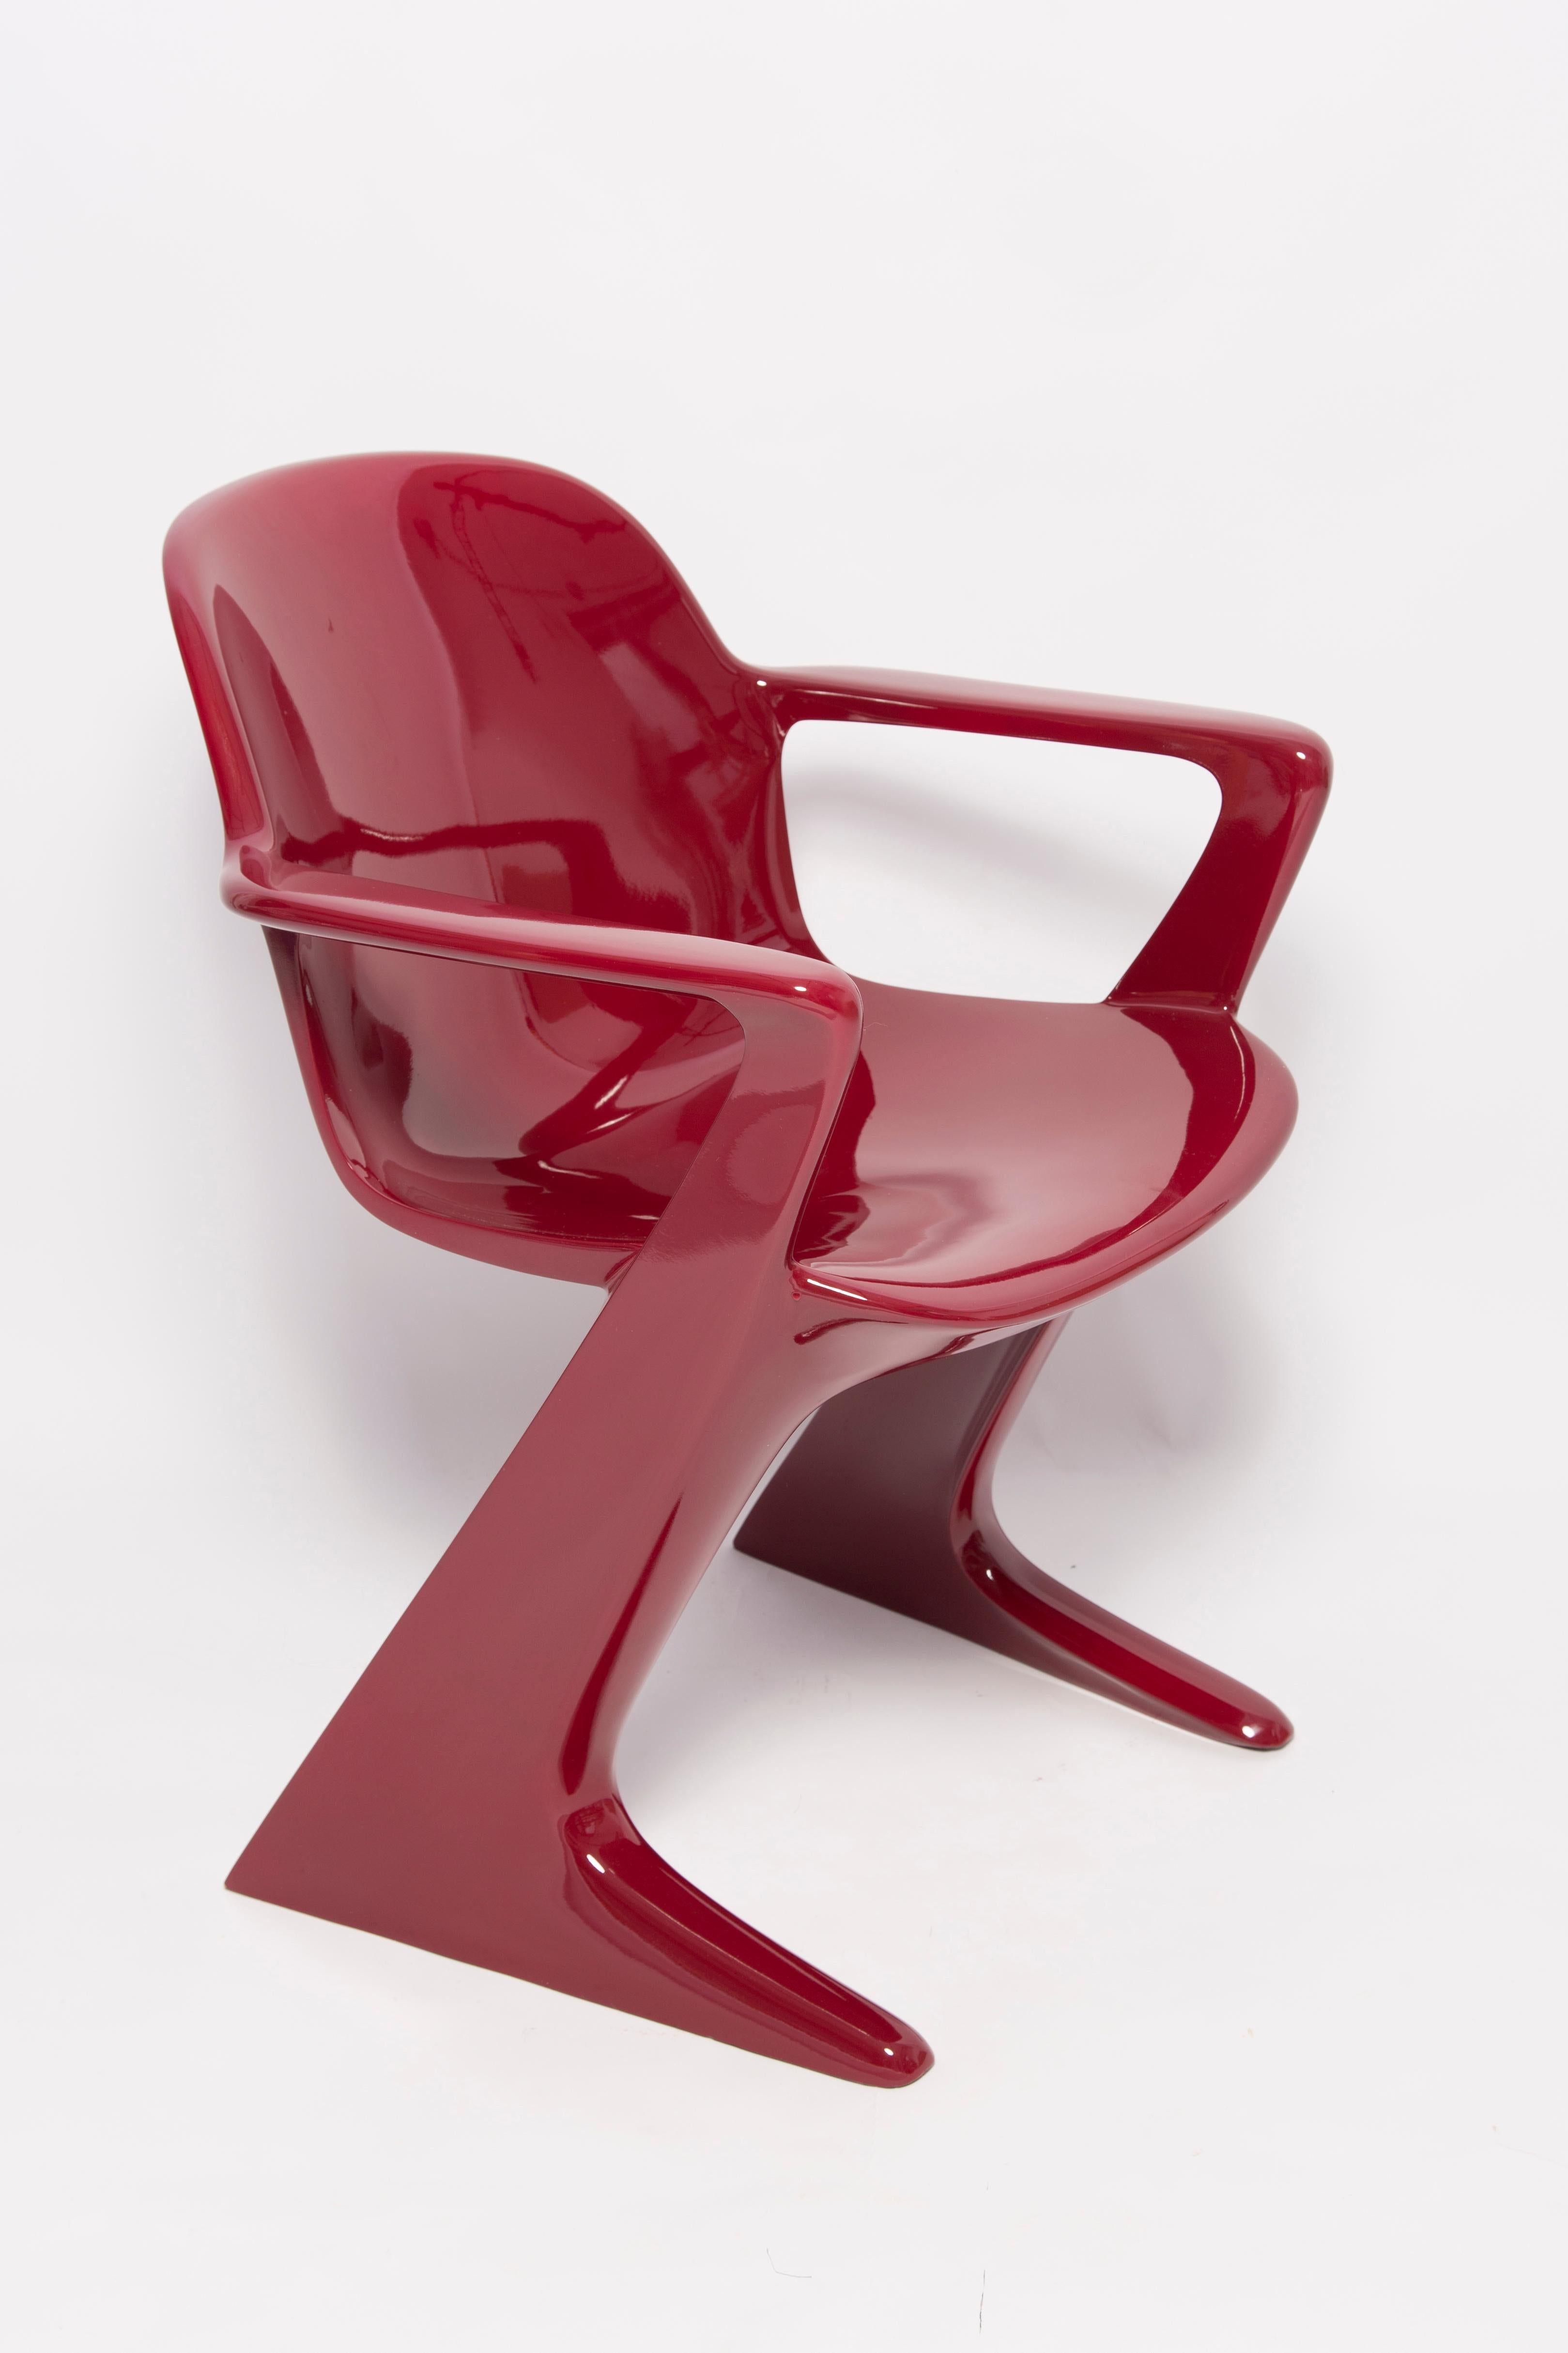 Ce modèle est appelé Z-chair. Conçue en 1968 en RDA par Ernst Moeckl et Siegfried Mehl, version allemande de la chaise Panton. Également appelée chaise kangourou ou chaise variopur. Produit en Allemagne de l'Est.

La chaise est après rénovation